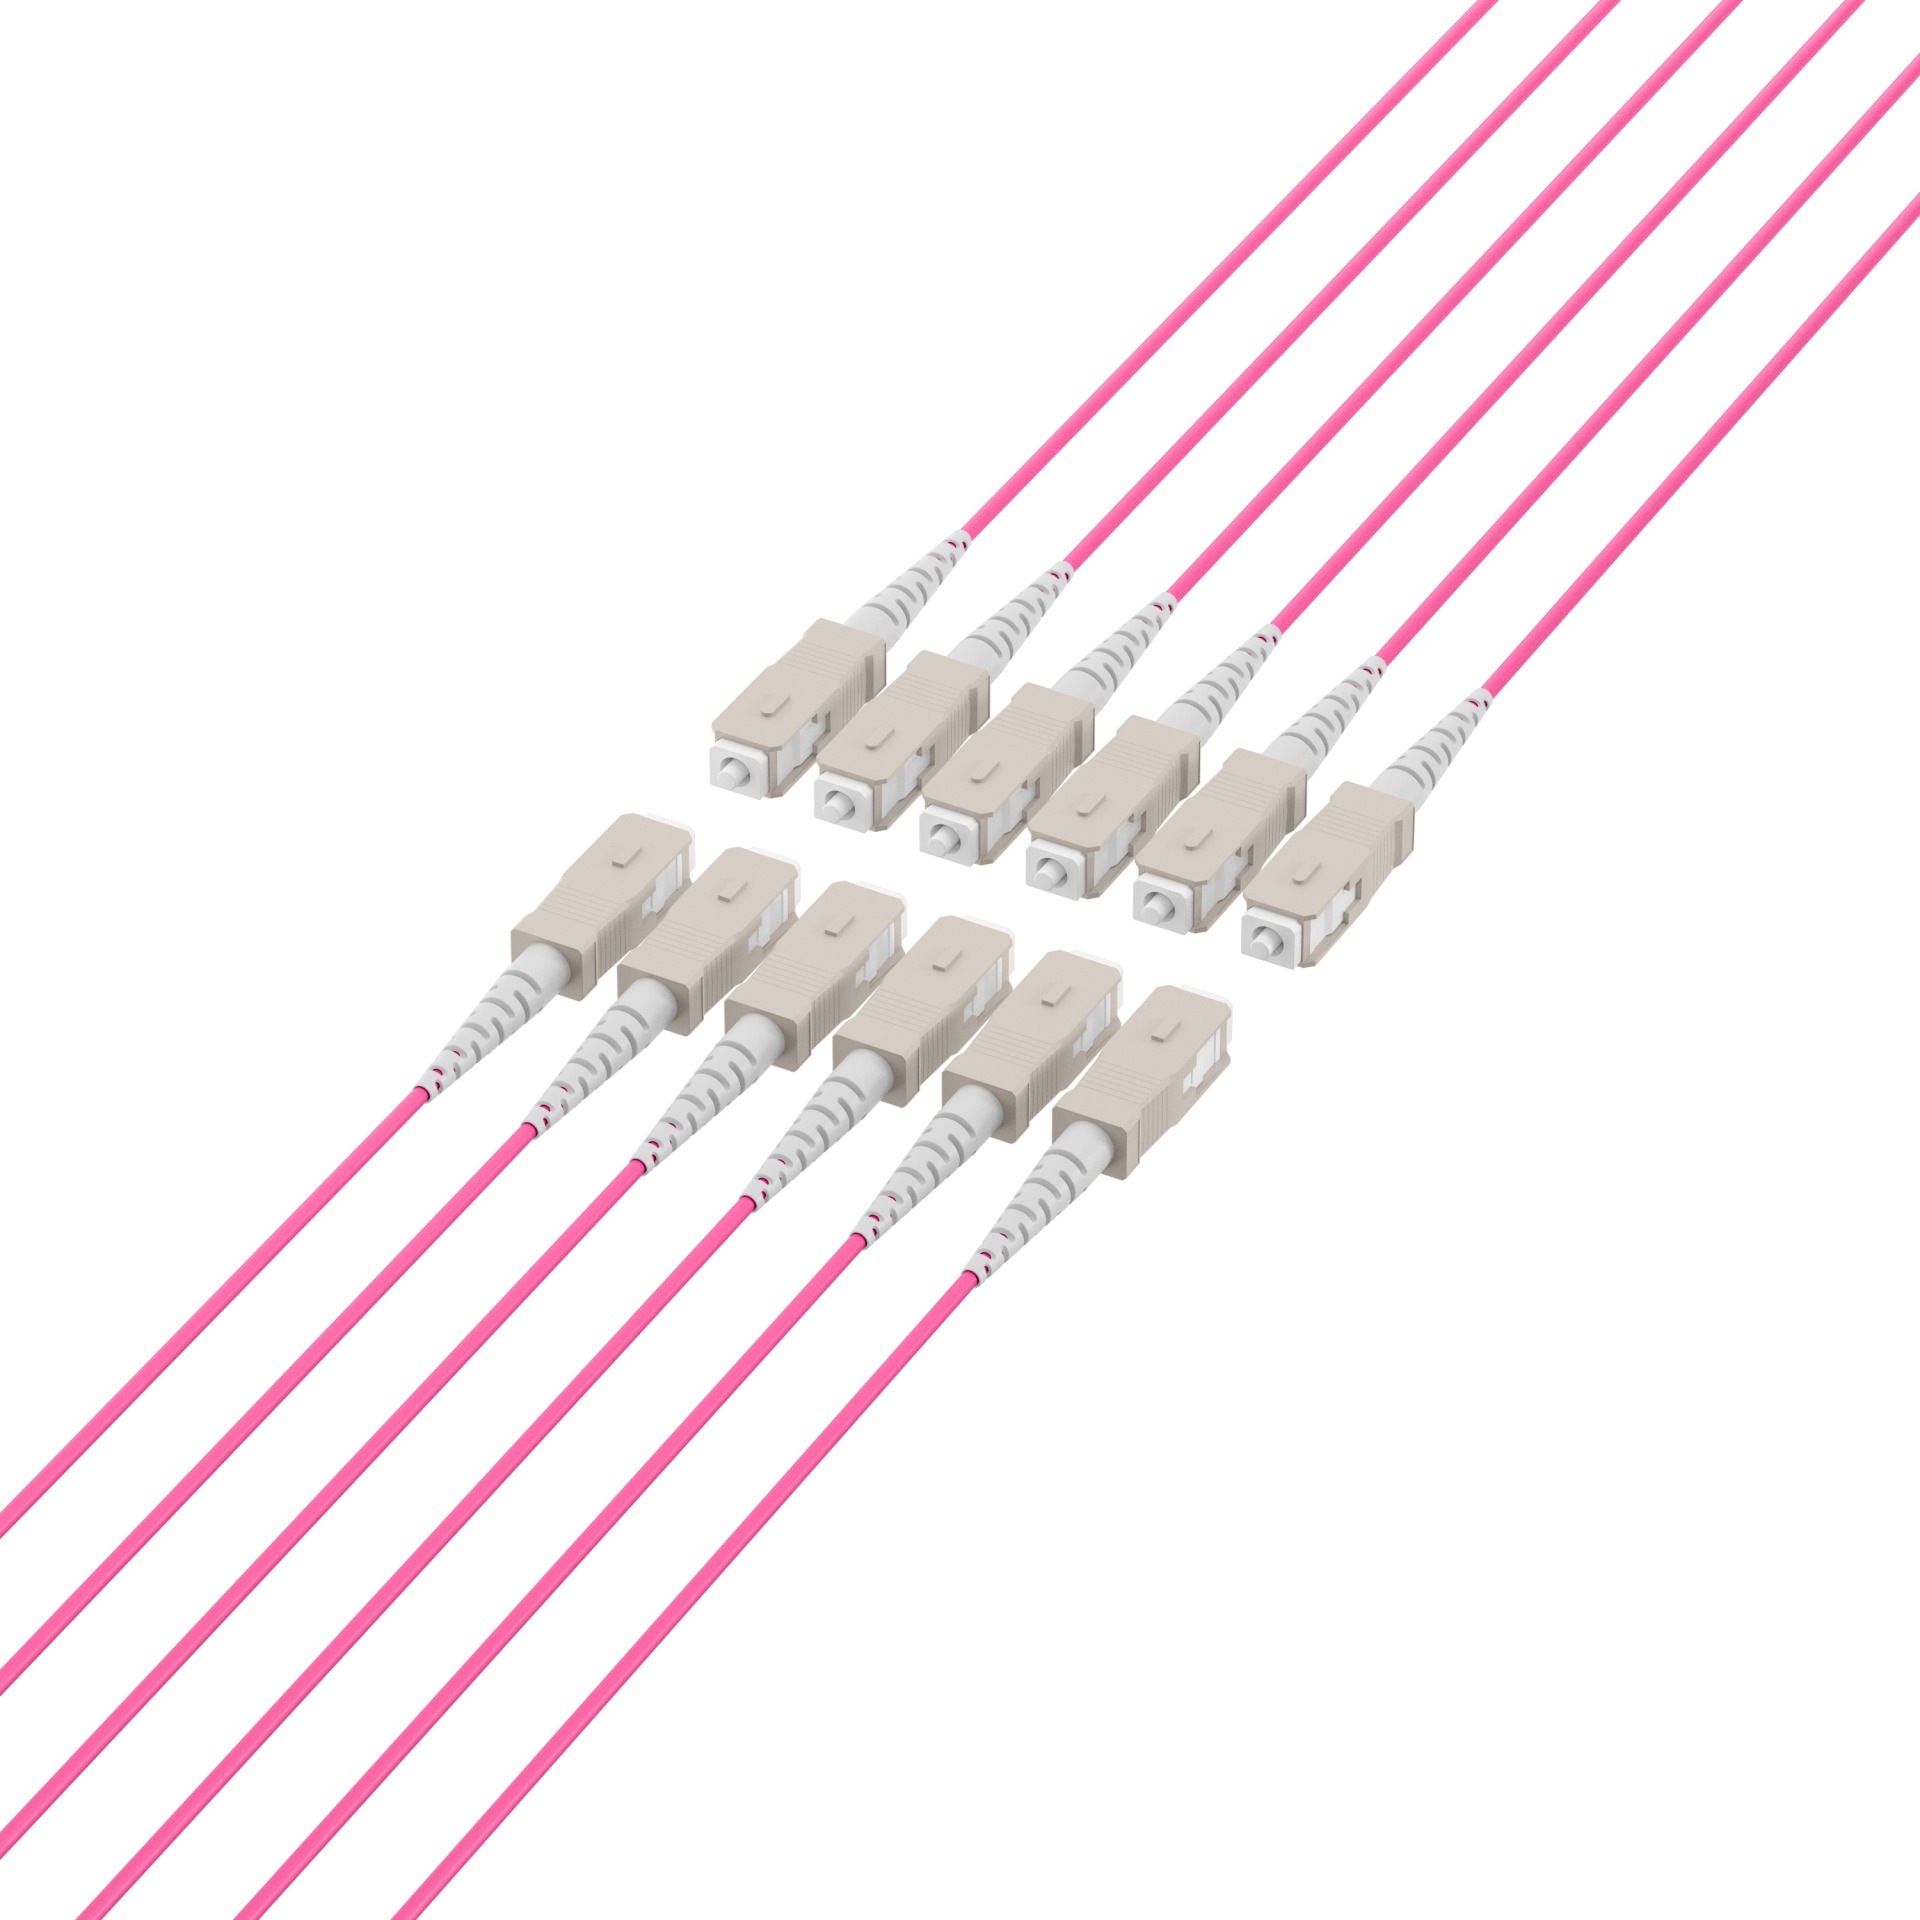 Trunk cable U-DQ(ZN)BH OM4 12G (1x12) SC-SC,10m Dca LSZH